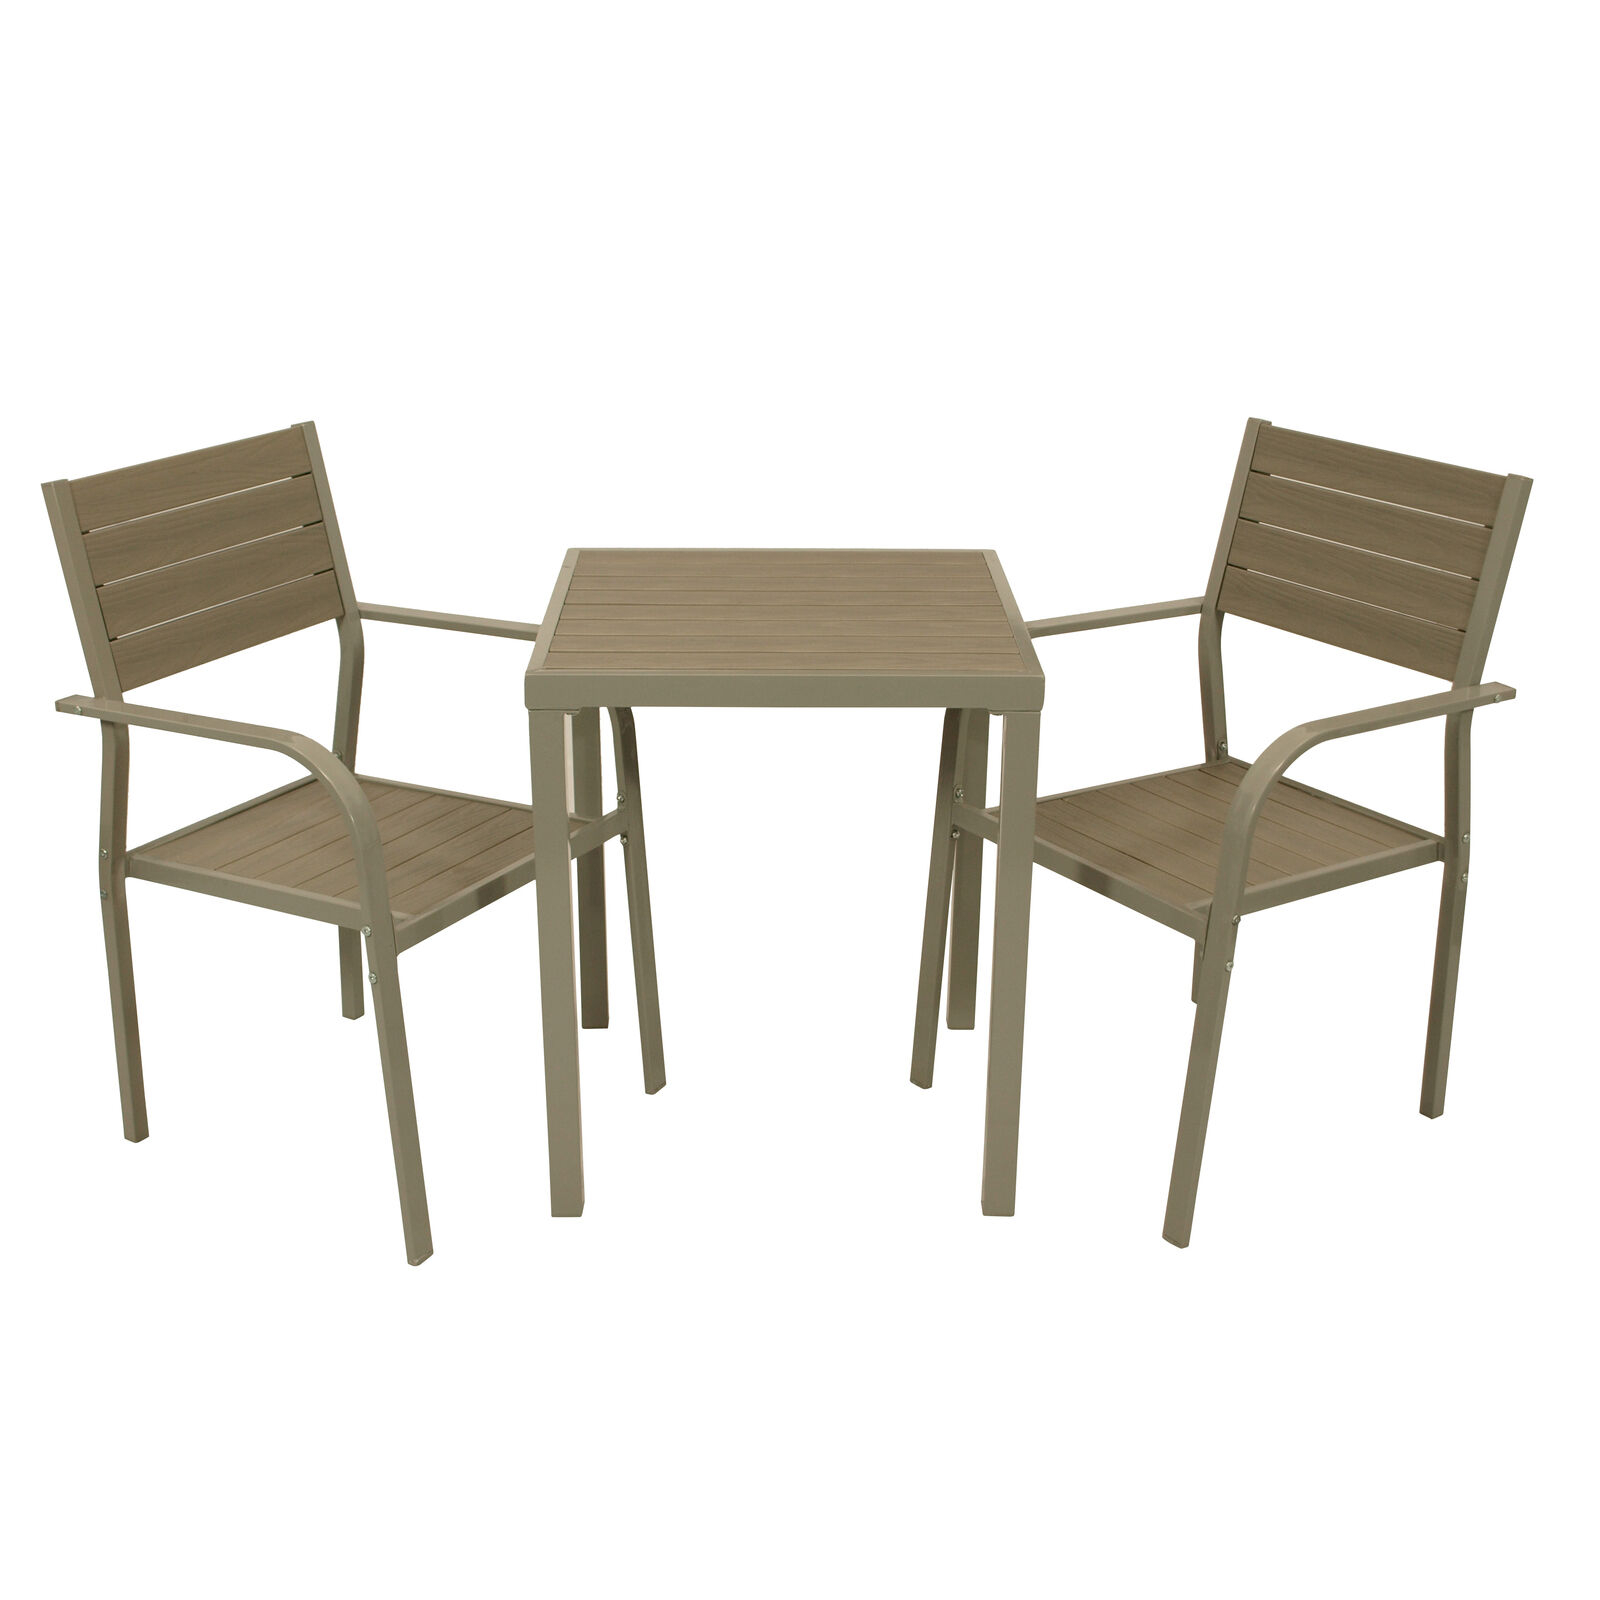 Комплект садовой мебели Degamo Varenna бежевый из 3 предметов комплект садовой мебели mandella karizma коричневый из 3 предметов